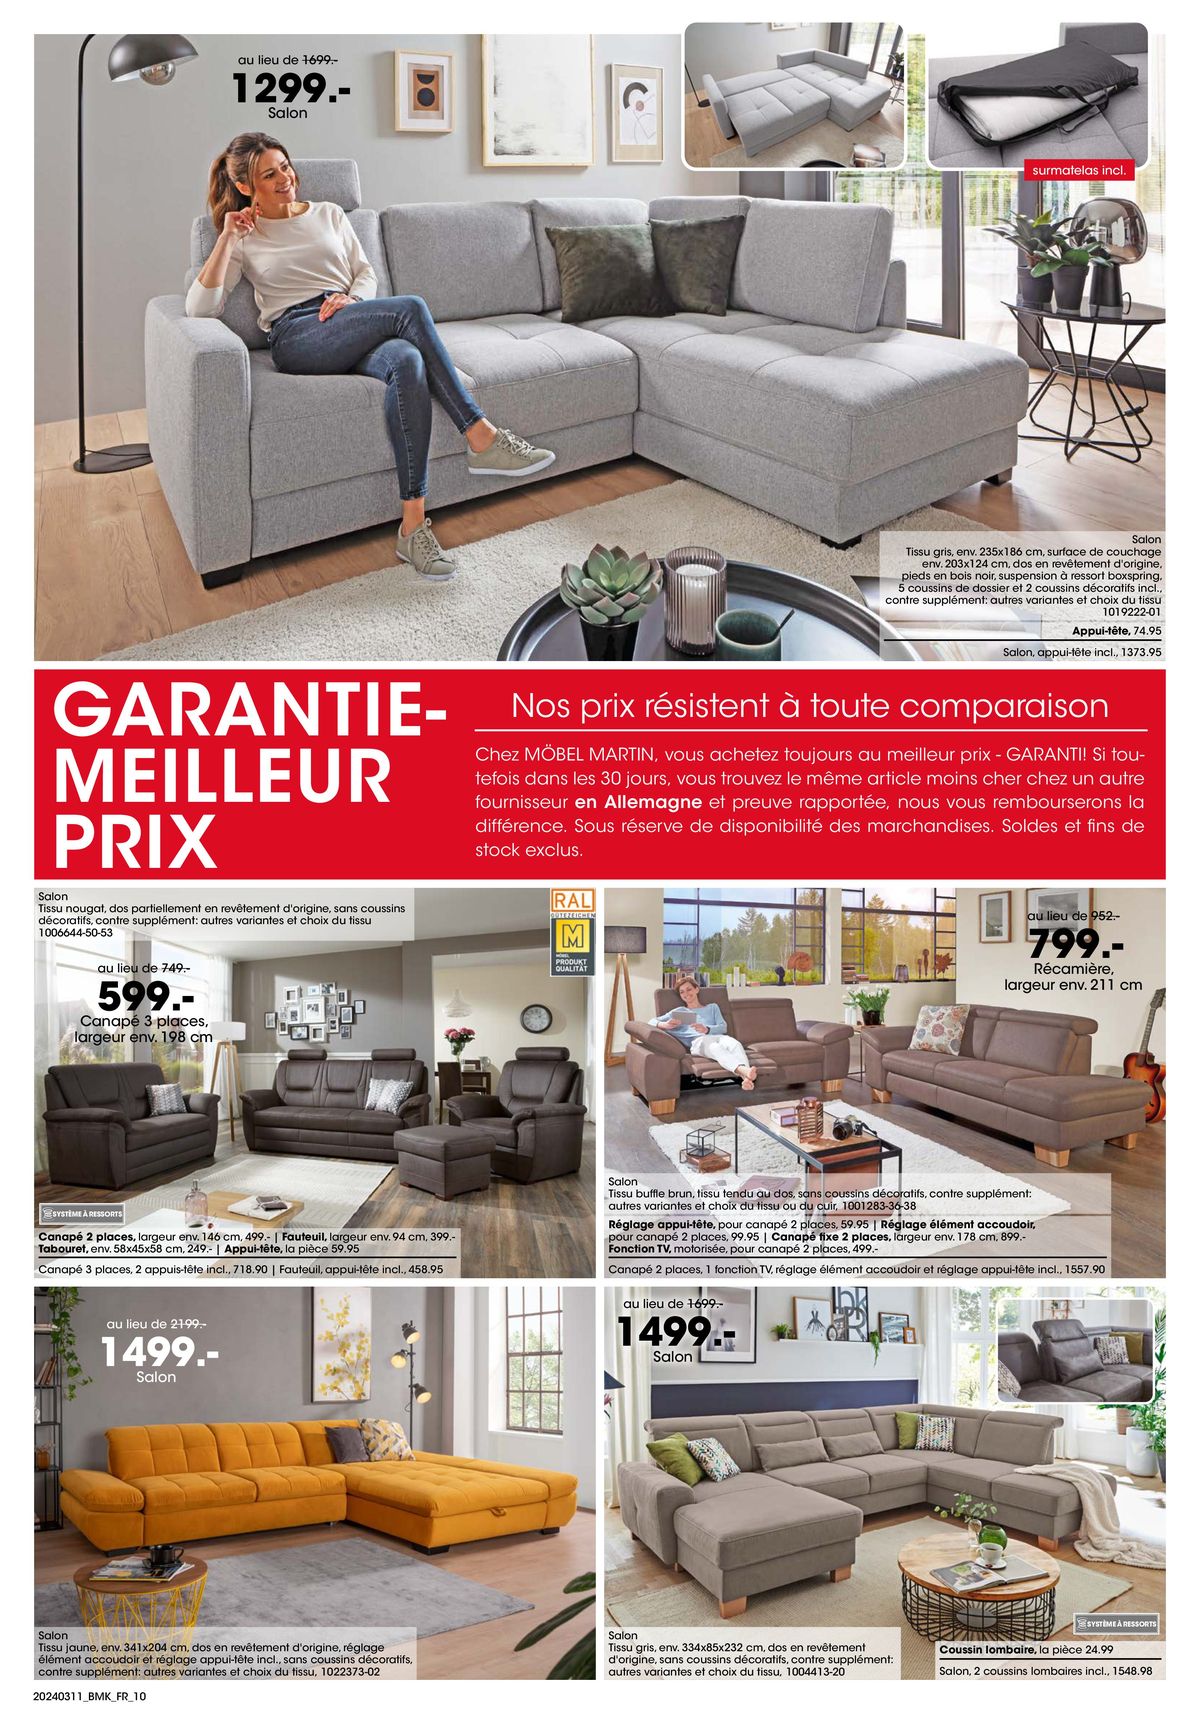 Catalogue Votre nouveau chez-vous avec GARANTIE-MEILLEUR PRIX, page 00010